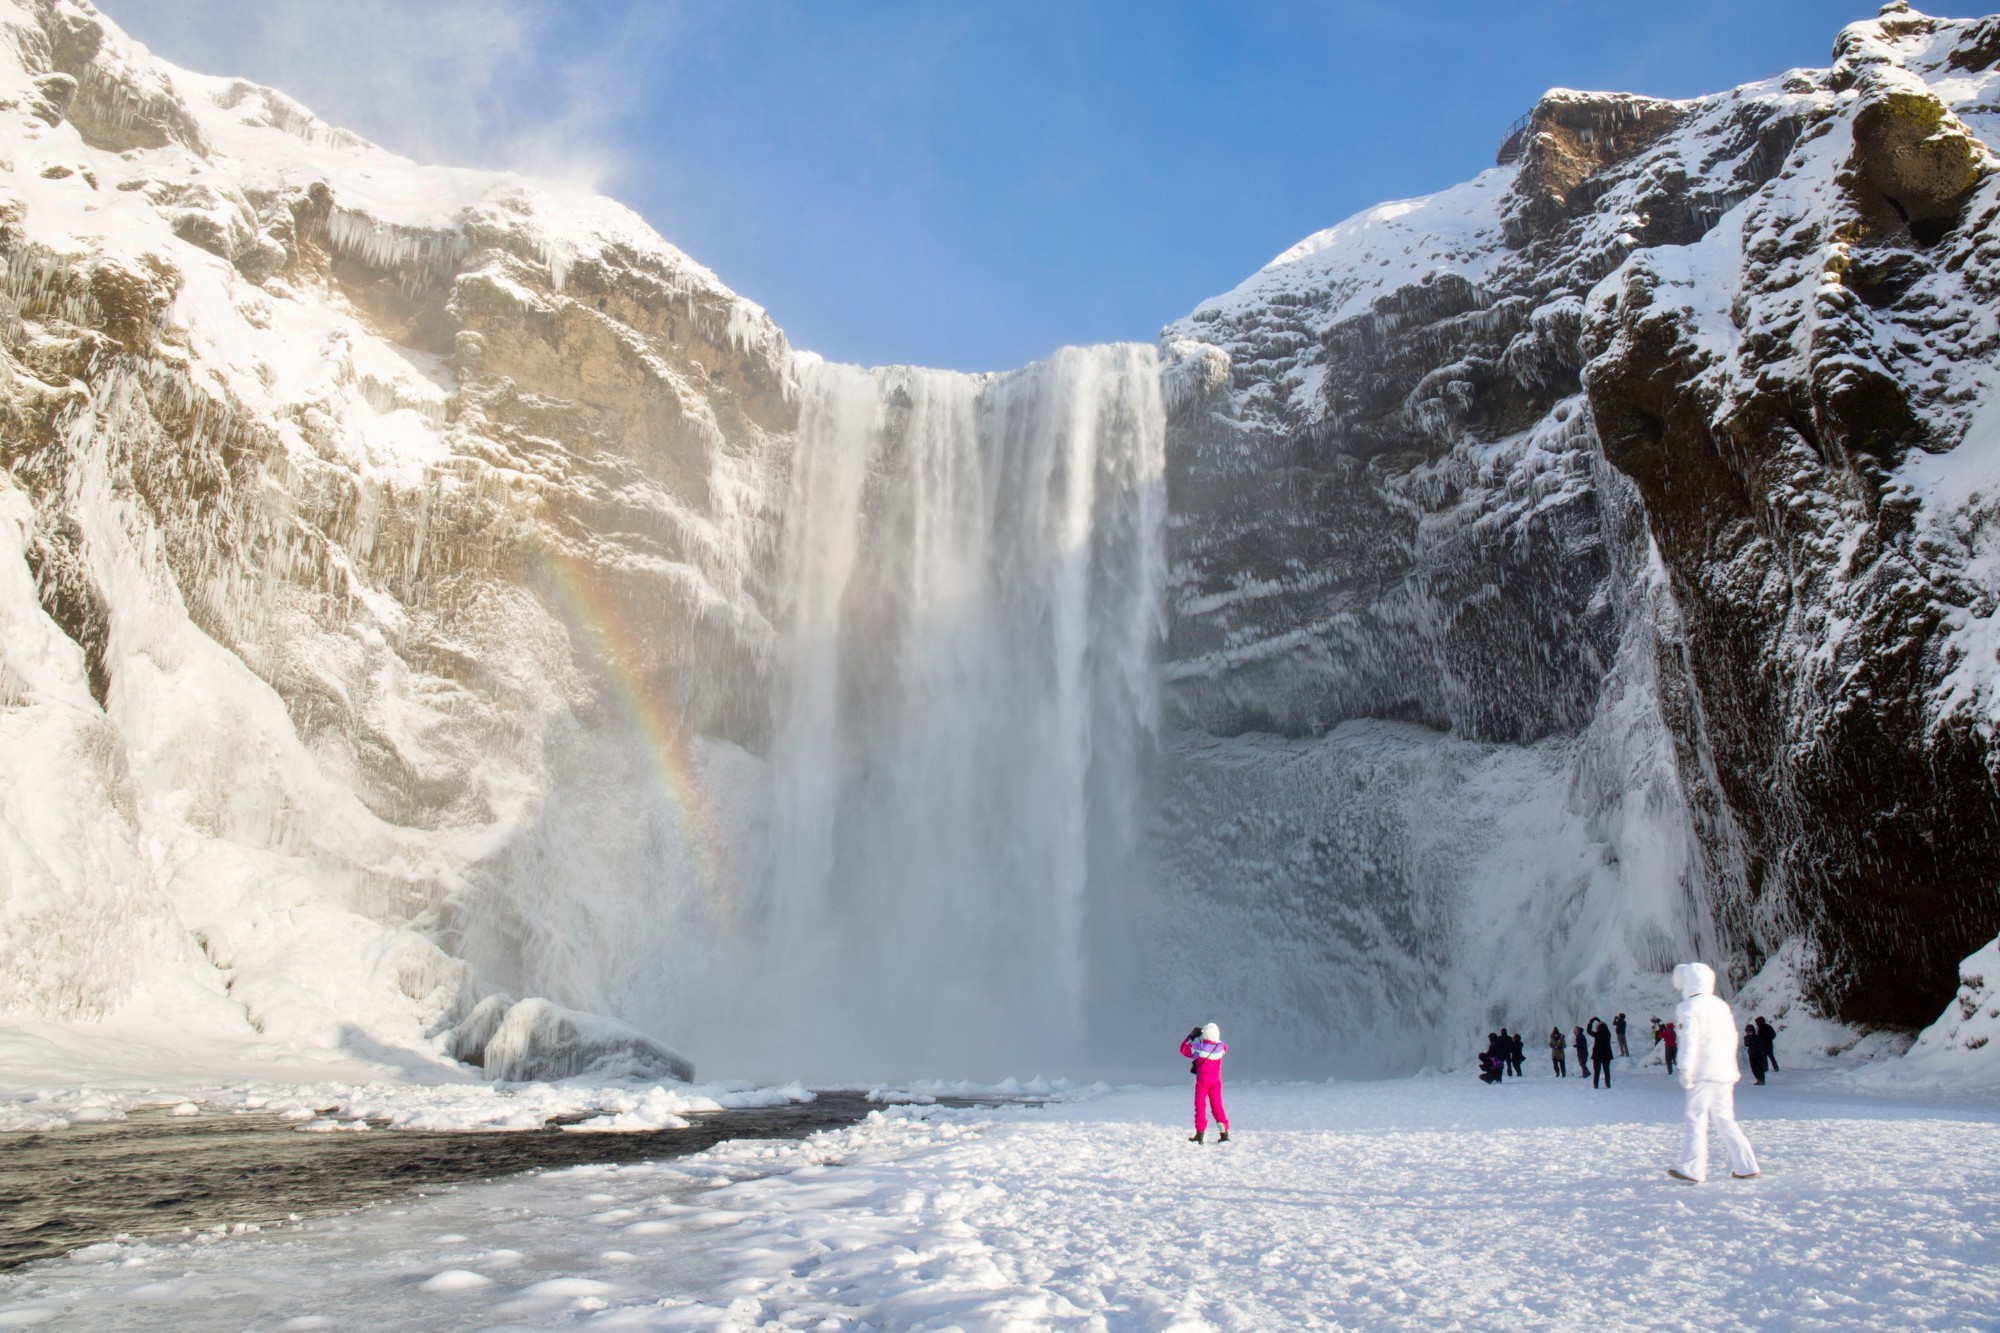 Skógafoss Waterfall in winter